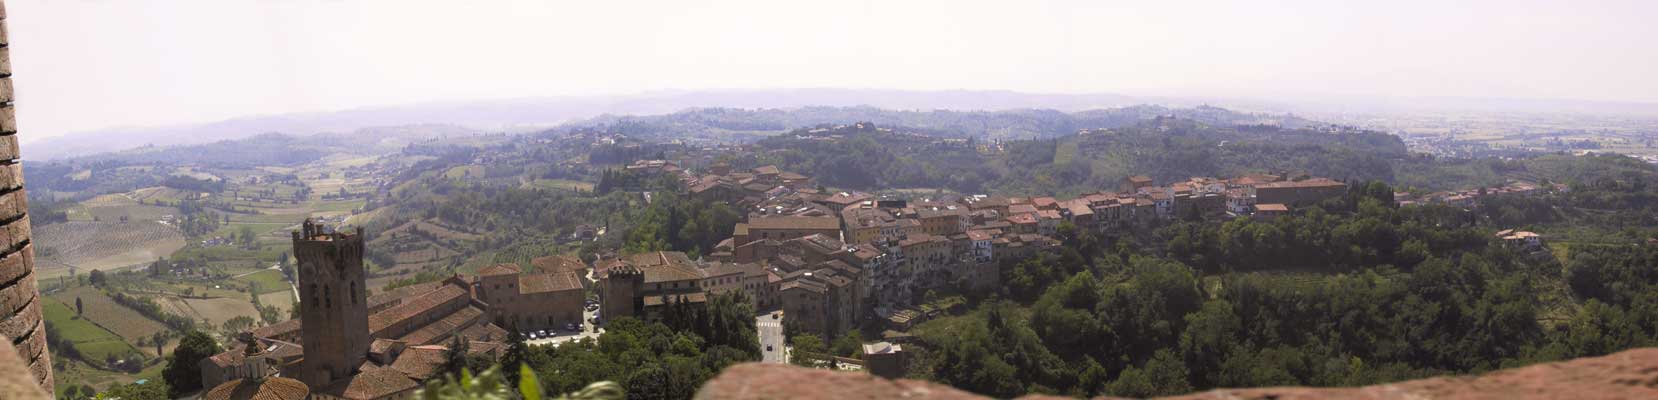 Stadje, van boven gezien: rode daken in een paar linten bovenop smalle heuvels